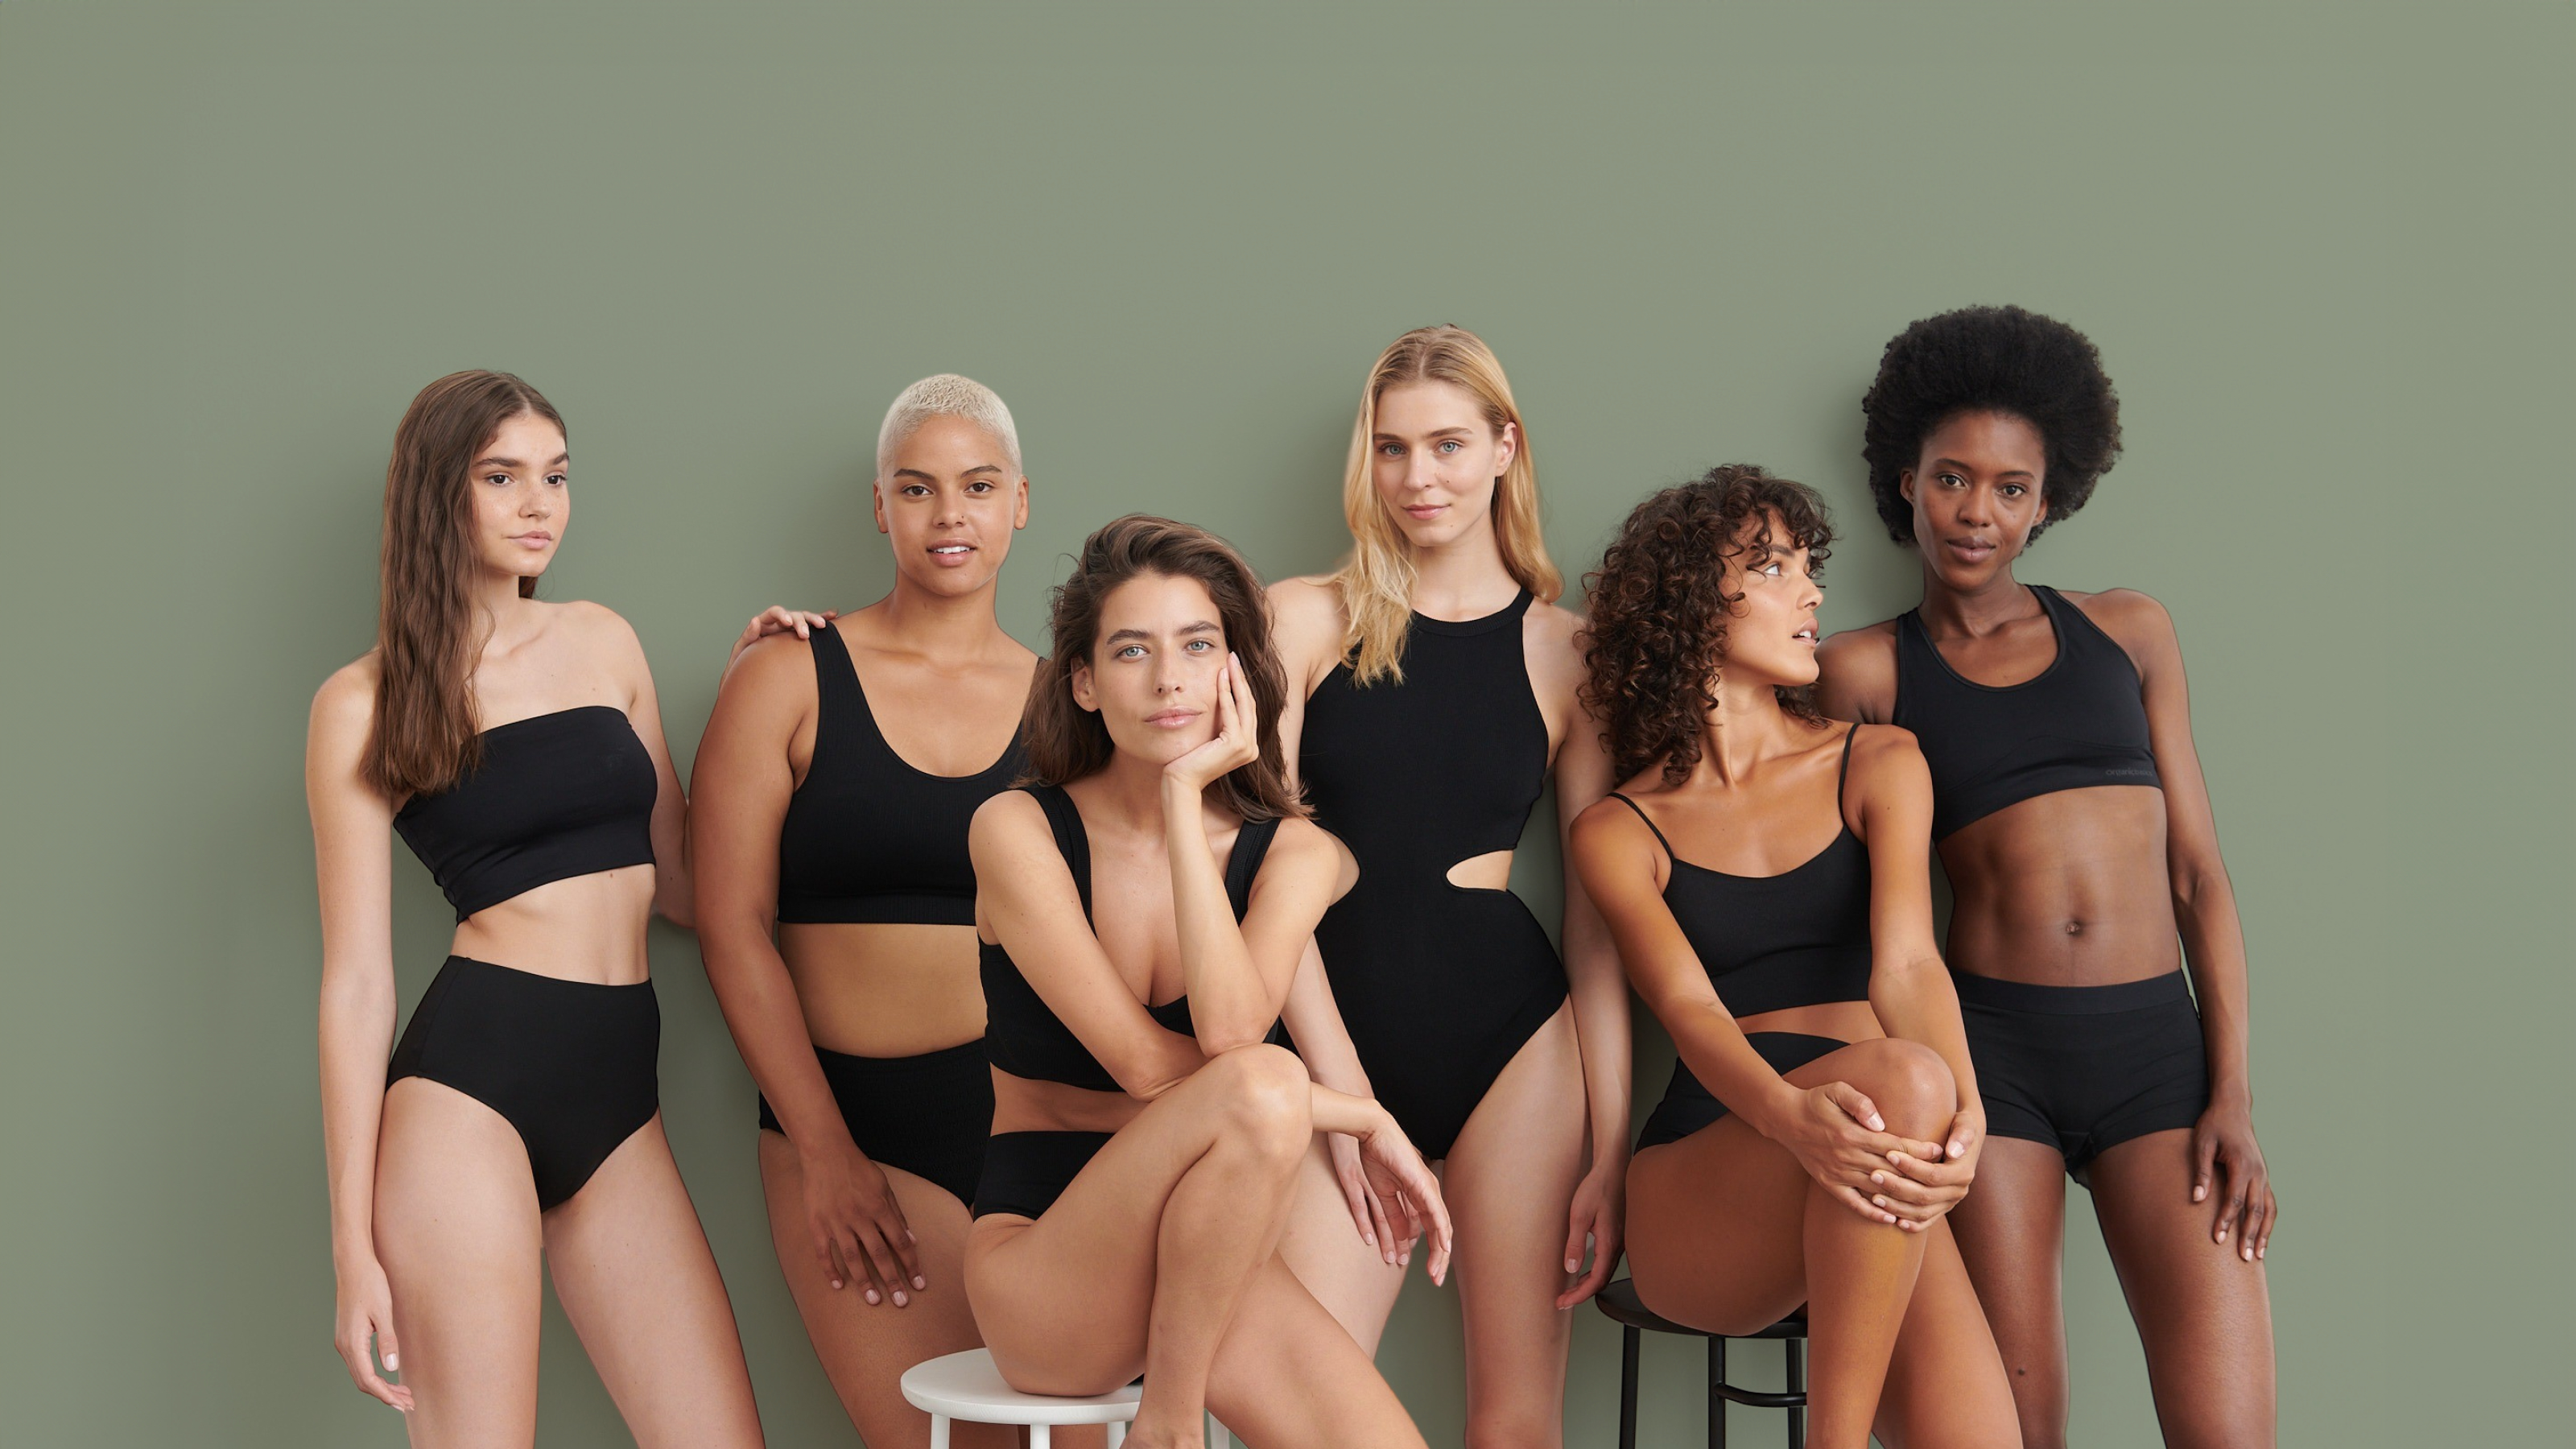 Grupo de seis mujeres sentadas y de pie en bikinis deportivos de color negro.